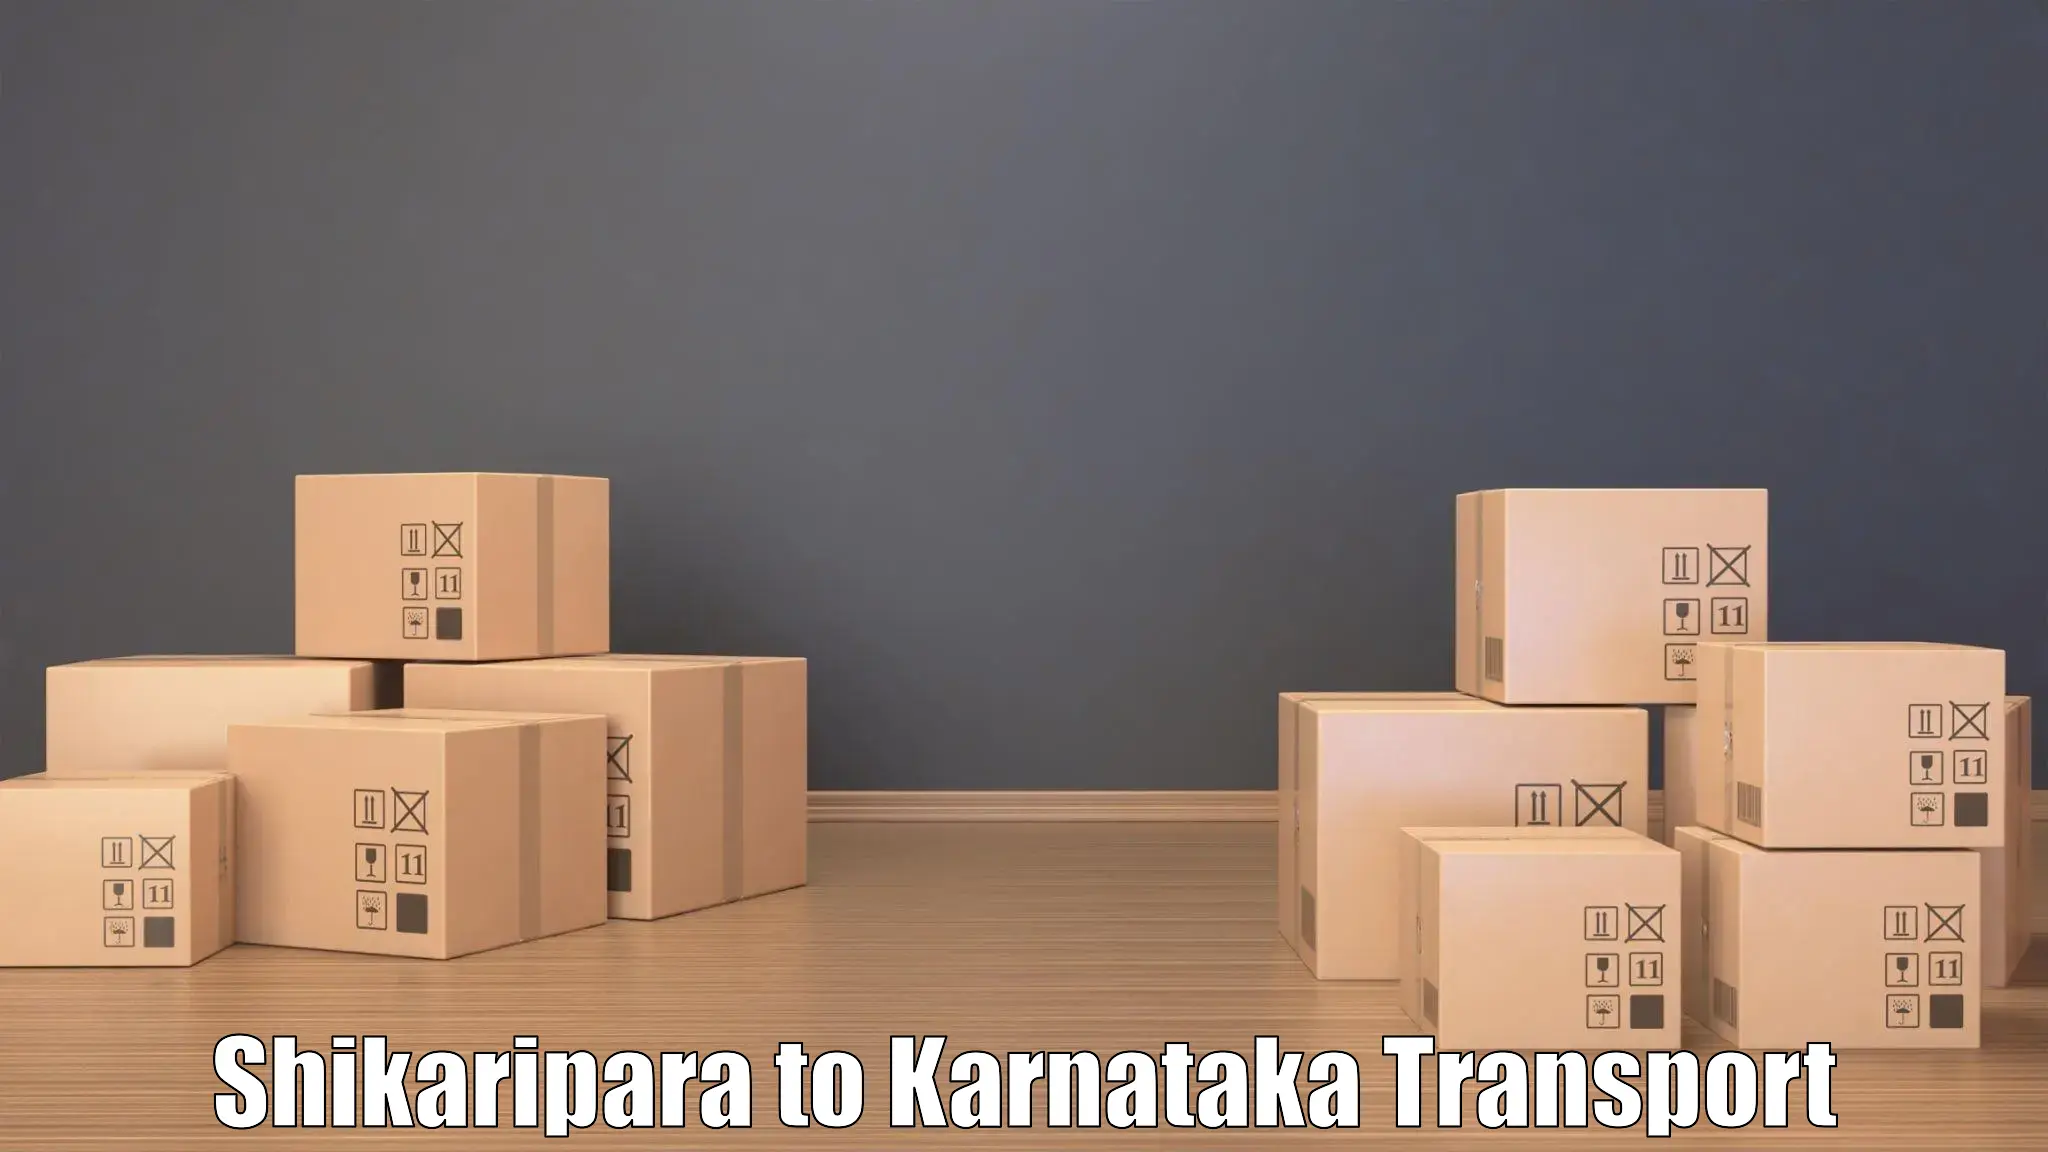 Truck transport companies in India Shikaripara to Bhadravathi